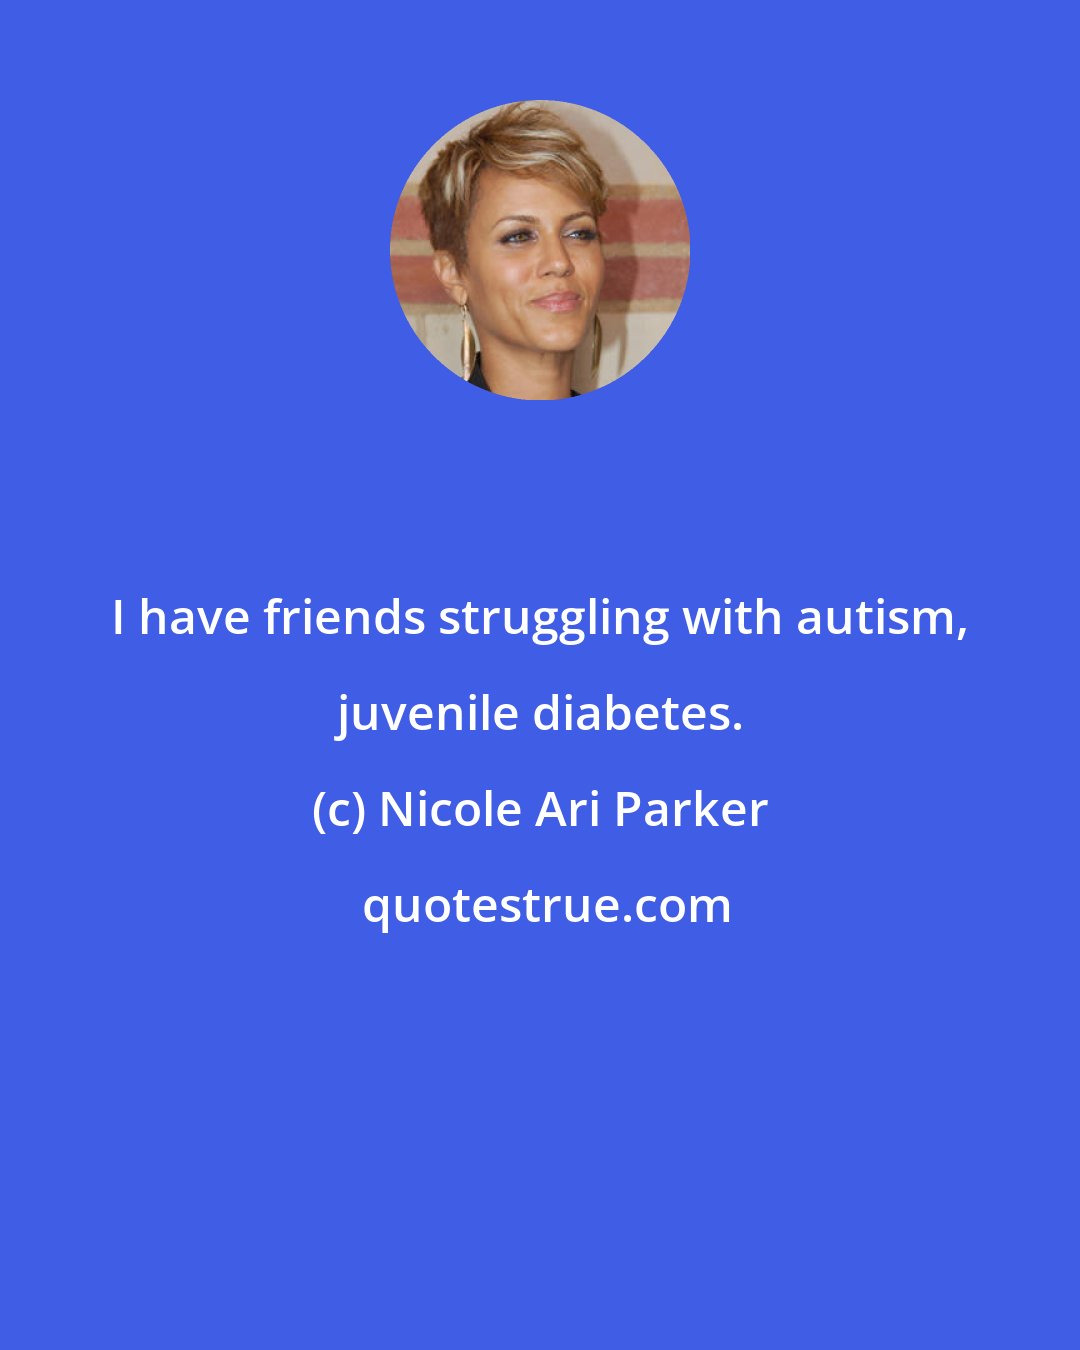 Nicole Ari Parker: I have friends struggling with autism, juvenile diabetes.